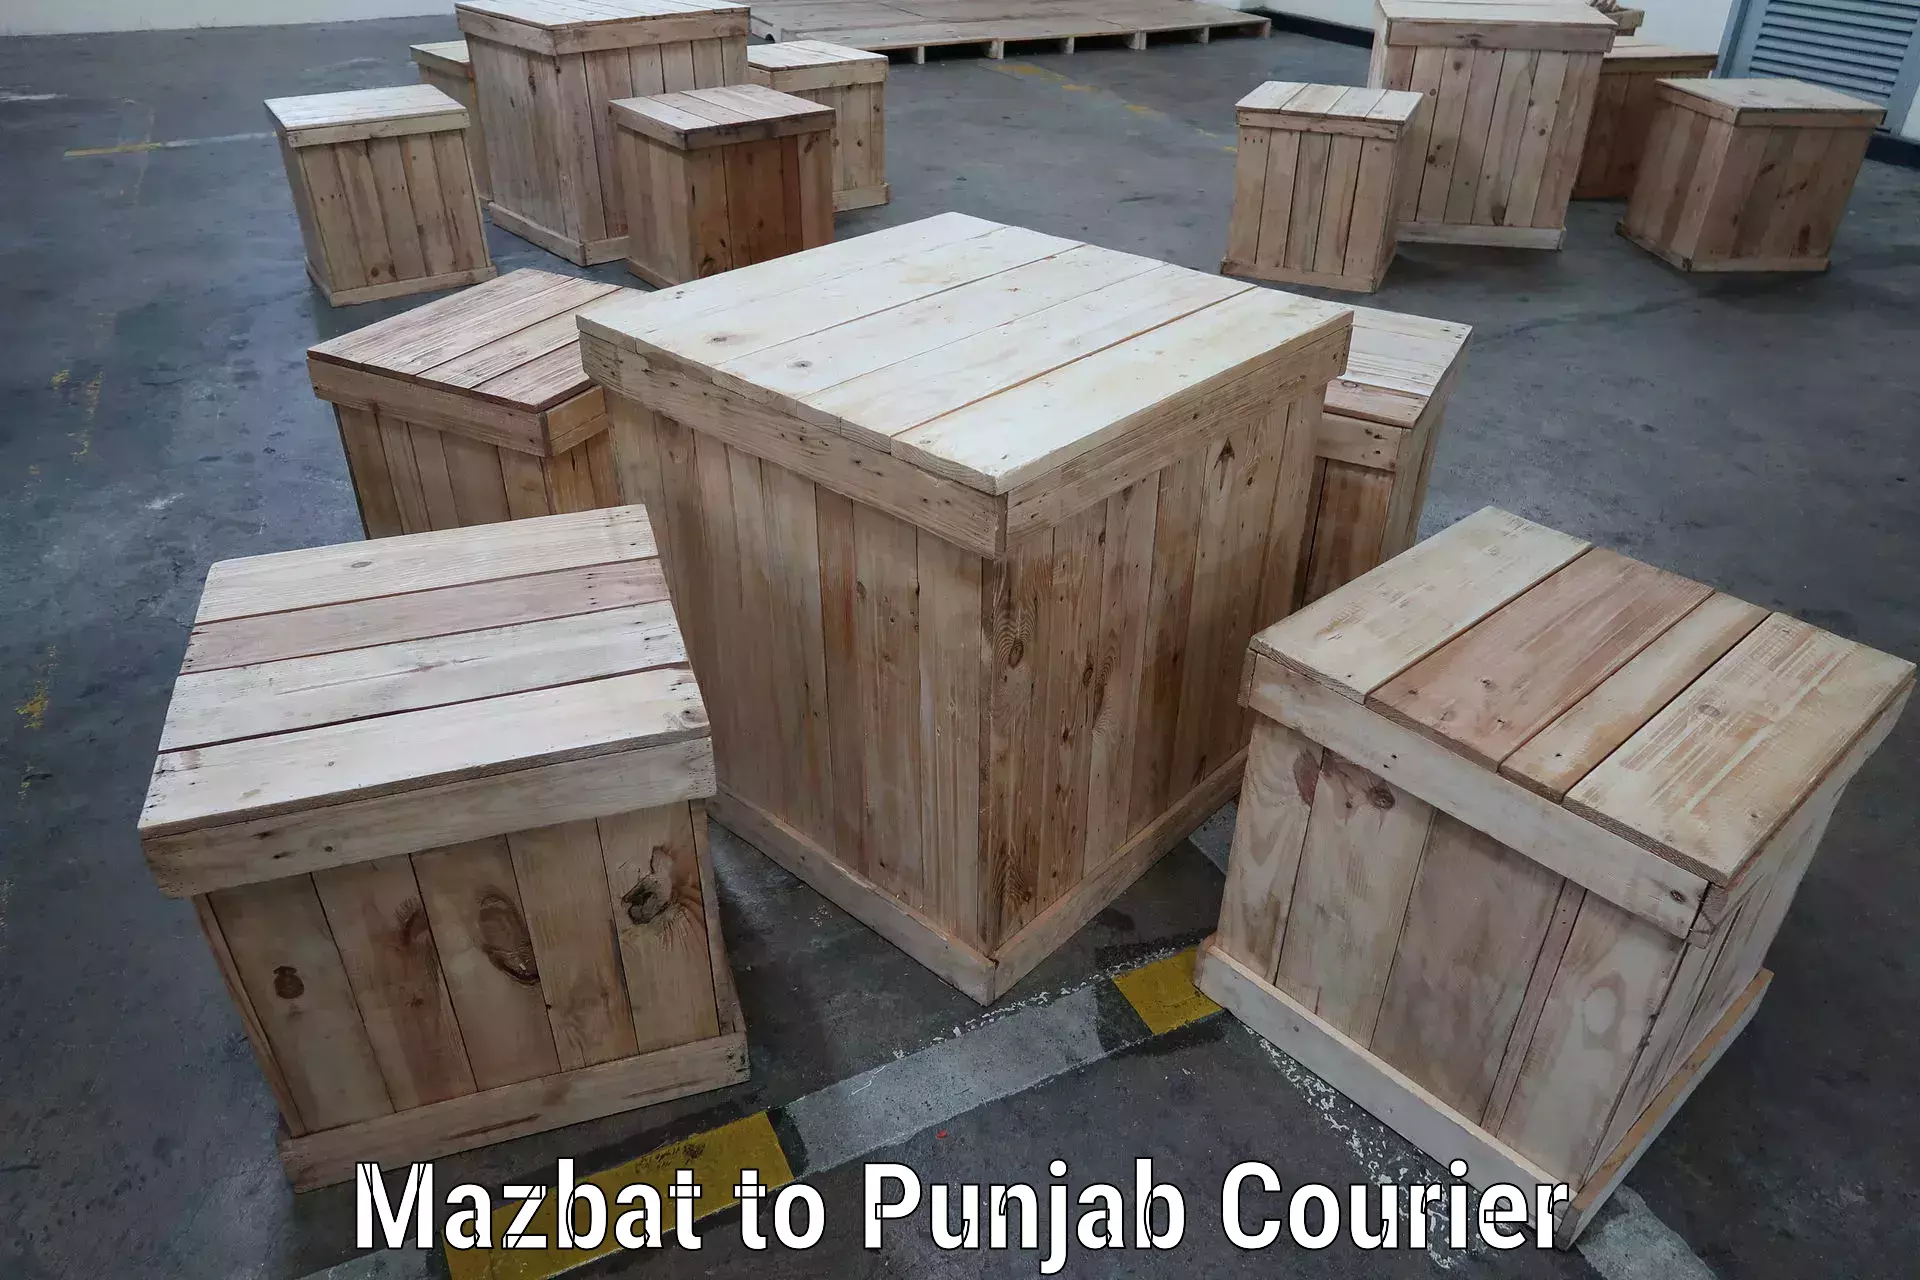 High-speed parcel service Mazbat to Abohar